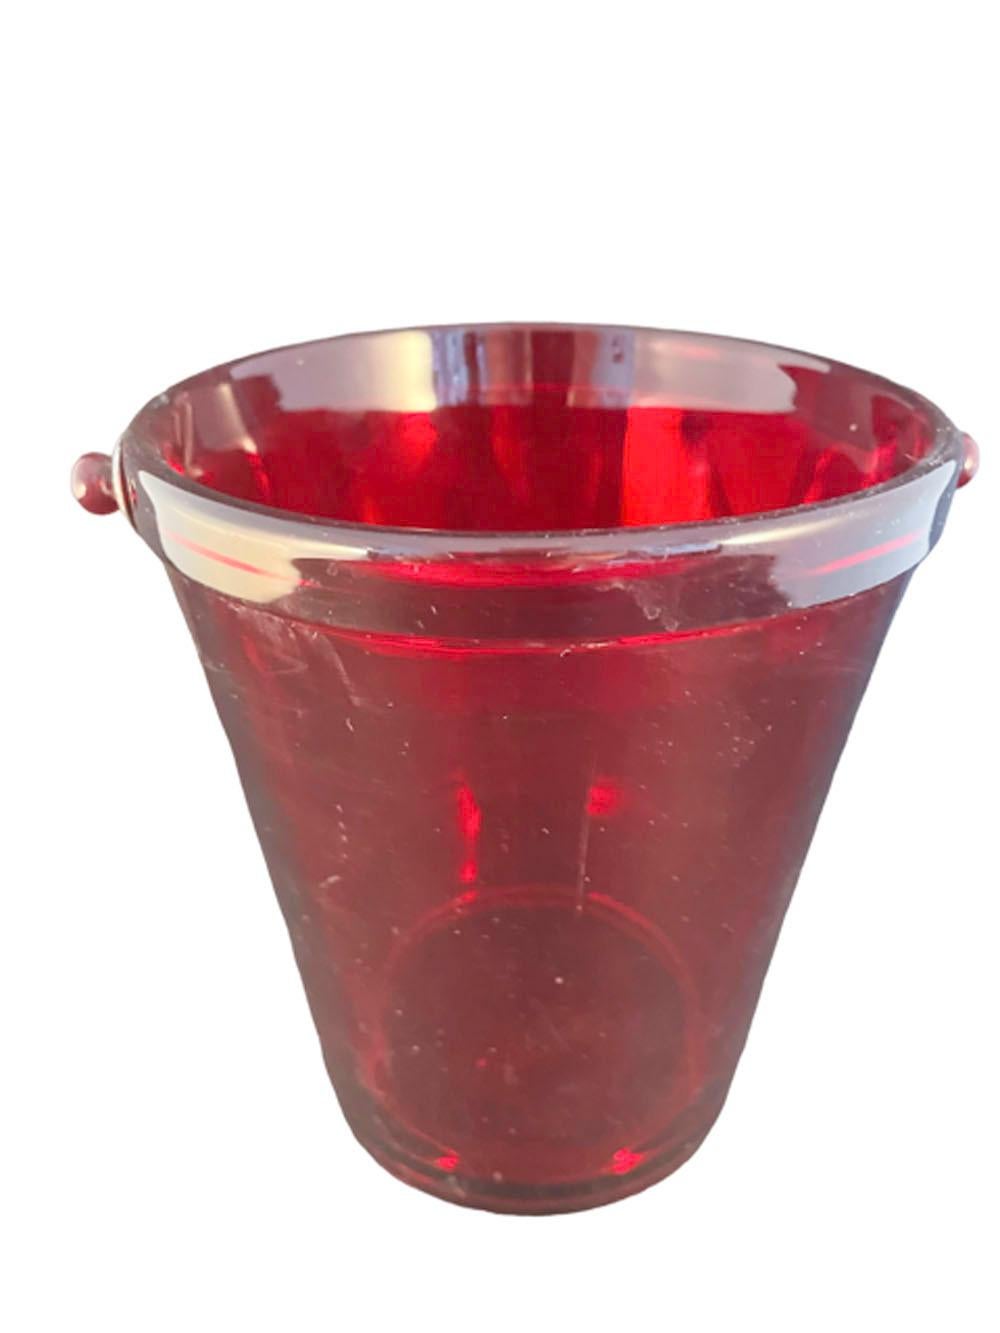 Art Déco, Fostoria Glass Co., seau à glace en forme de seau rouge rubis avec anse en métal chromé,

NOTE : Le bord n'est pas argenté, il est entièrement rouge. C'est le reflet dans les images.